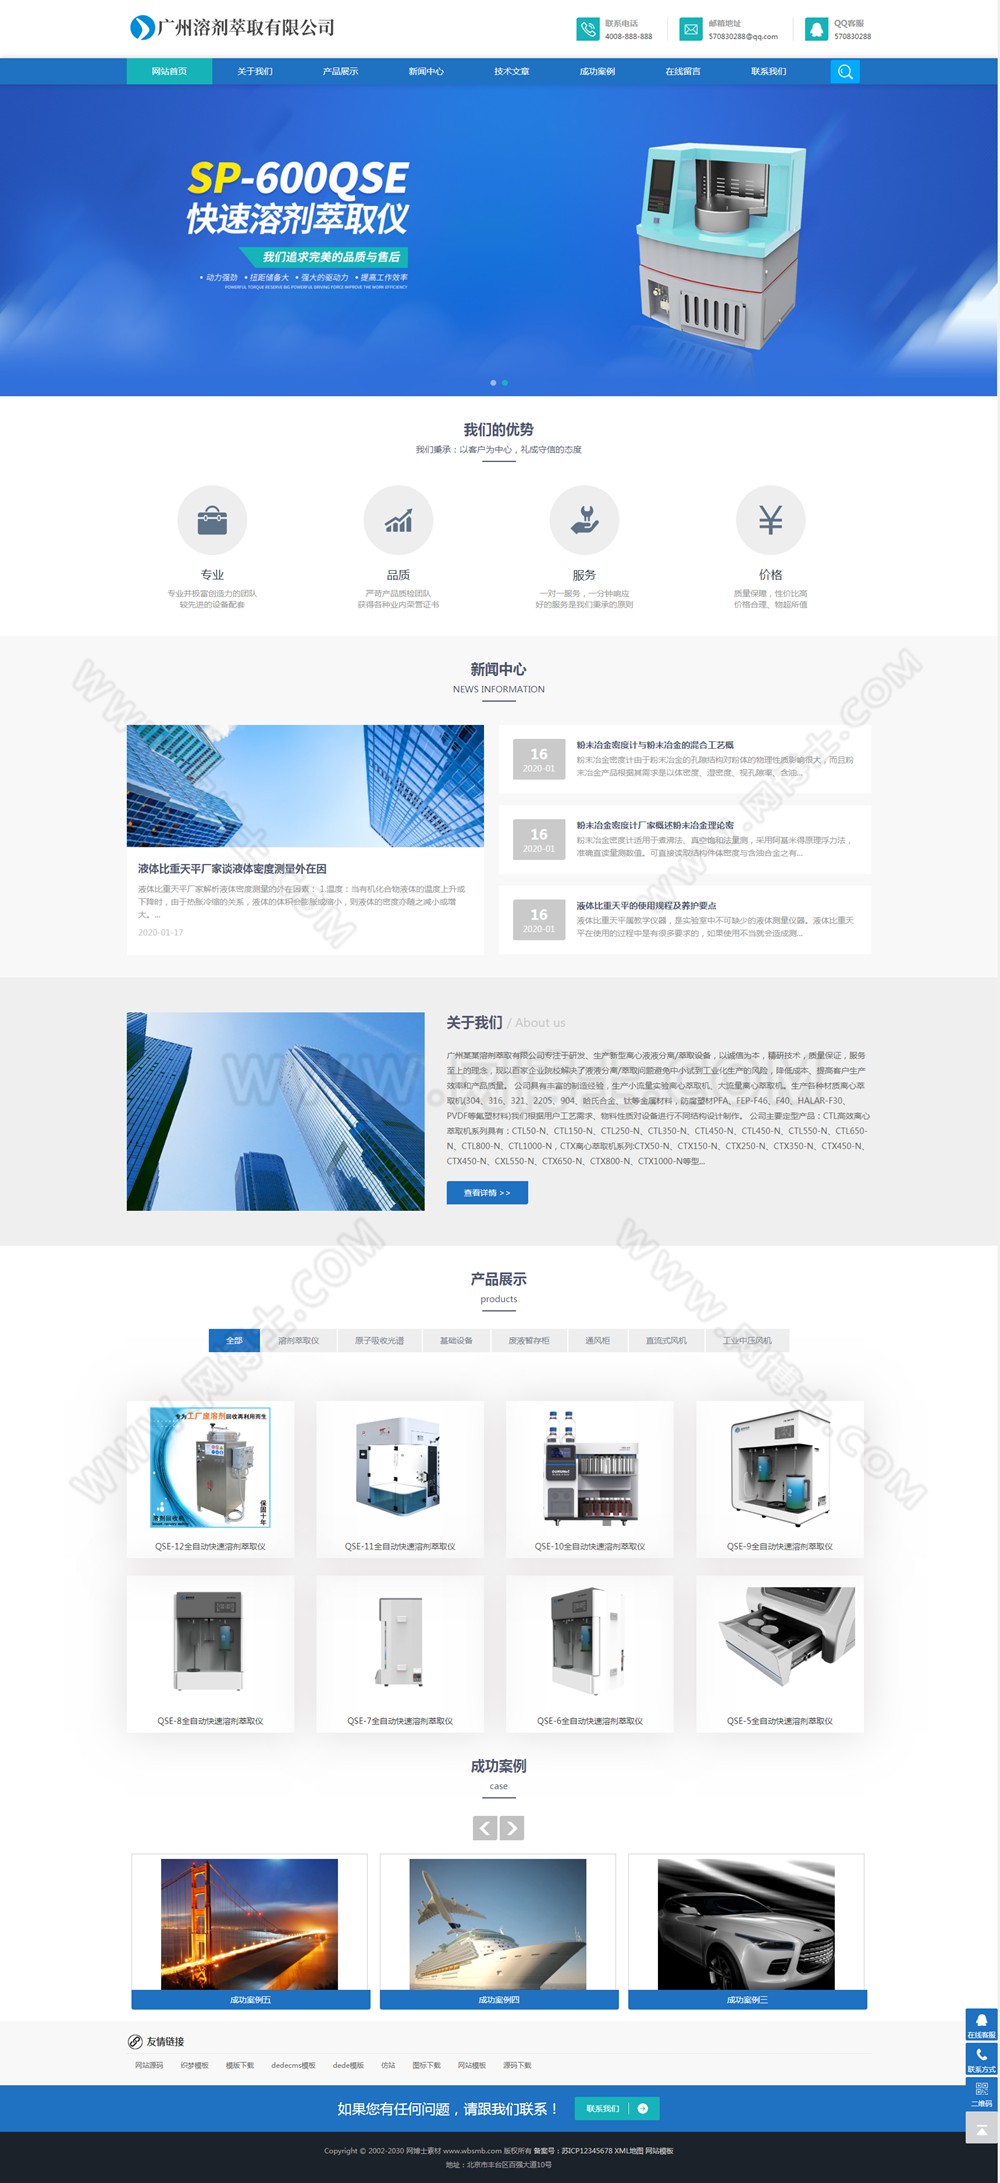 (自适应手机版)响应式溶剂萃取仪器设备类网站织梦模板 HTML5蓝色通用机械设备网站